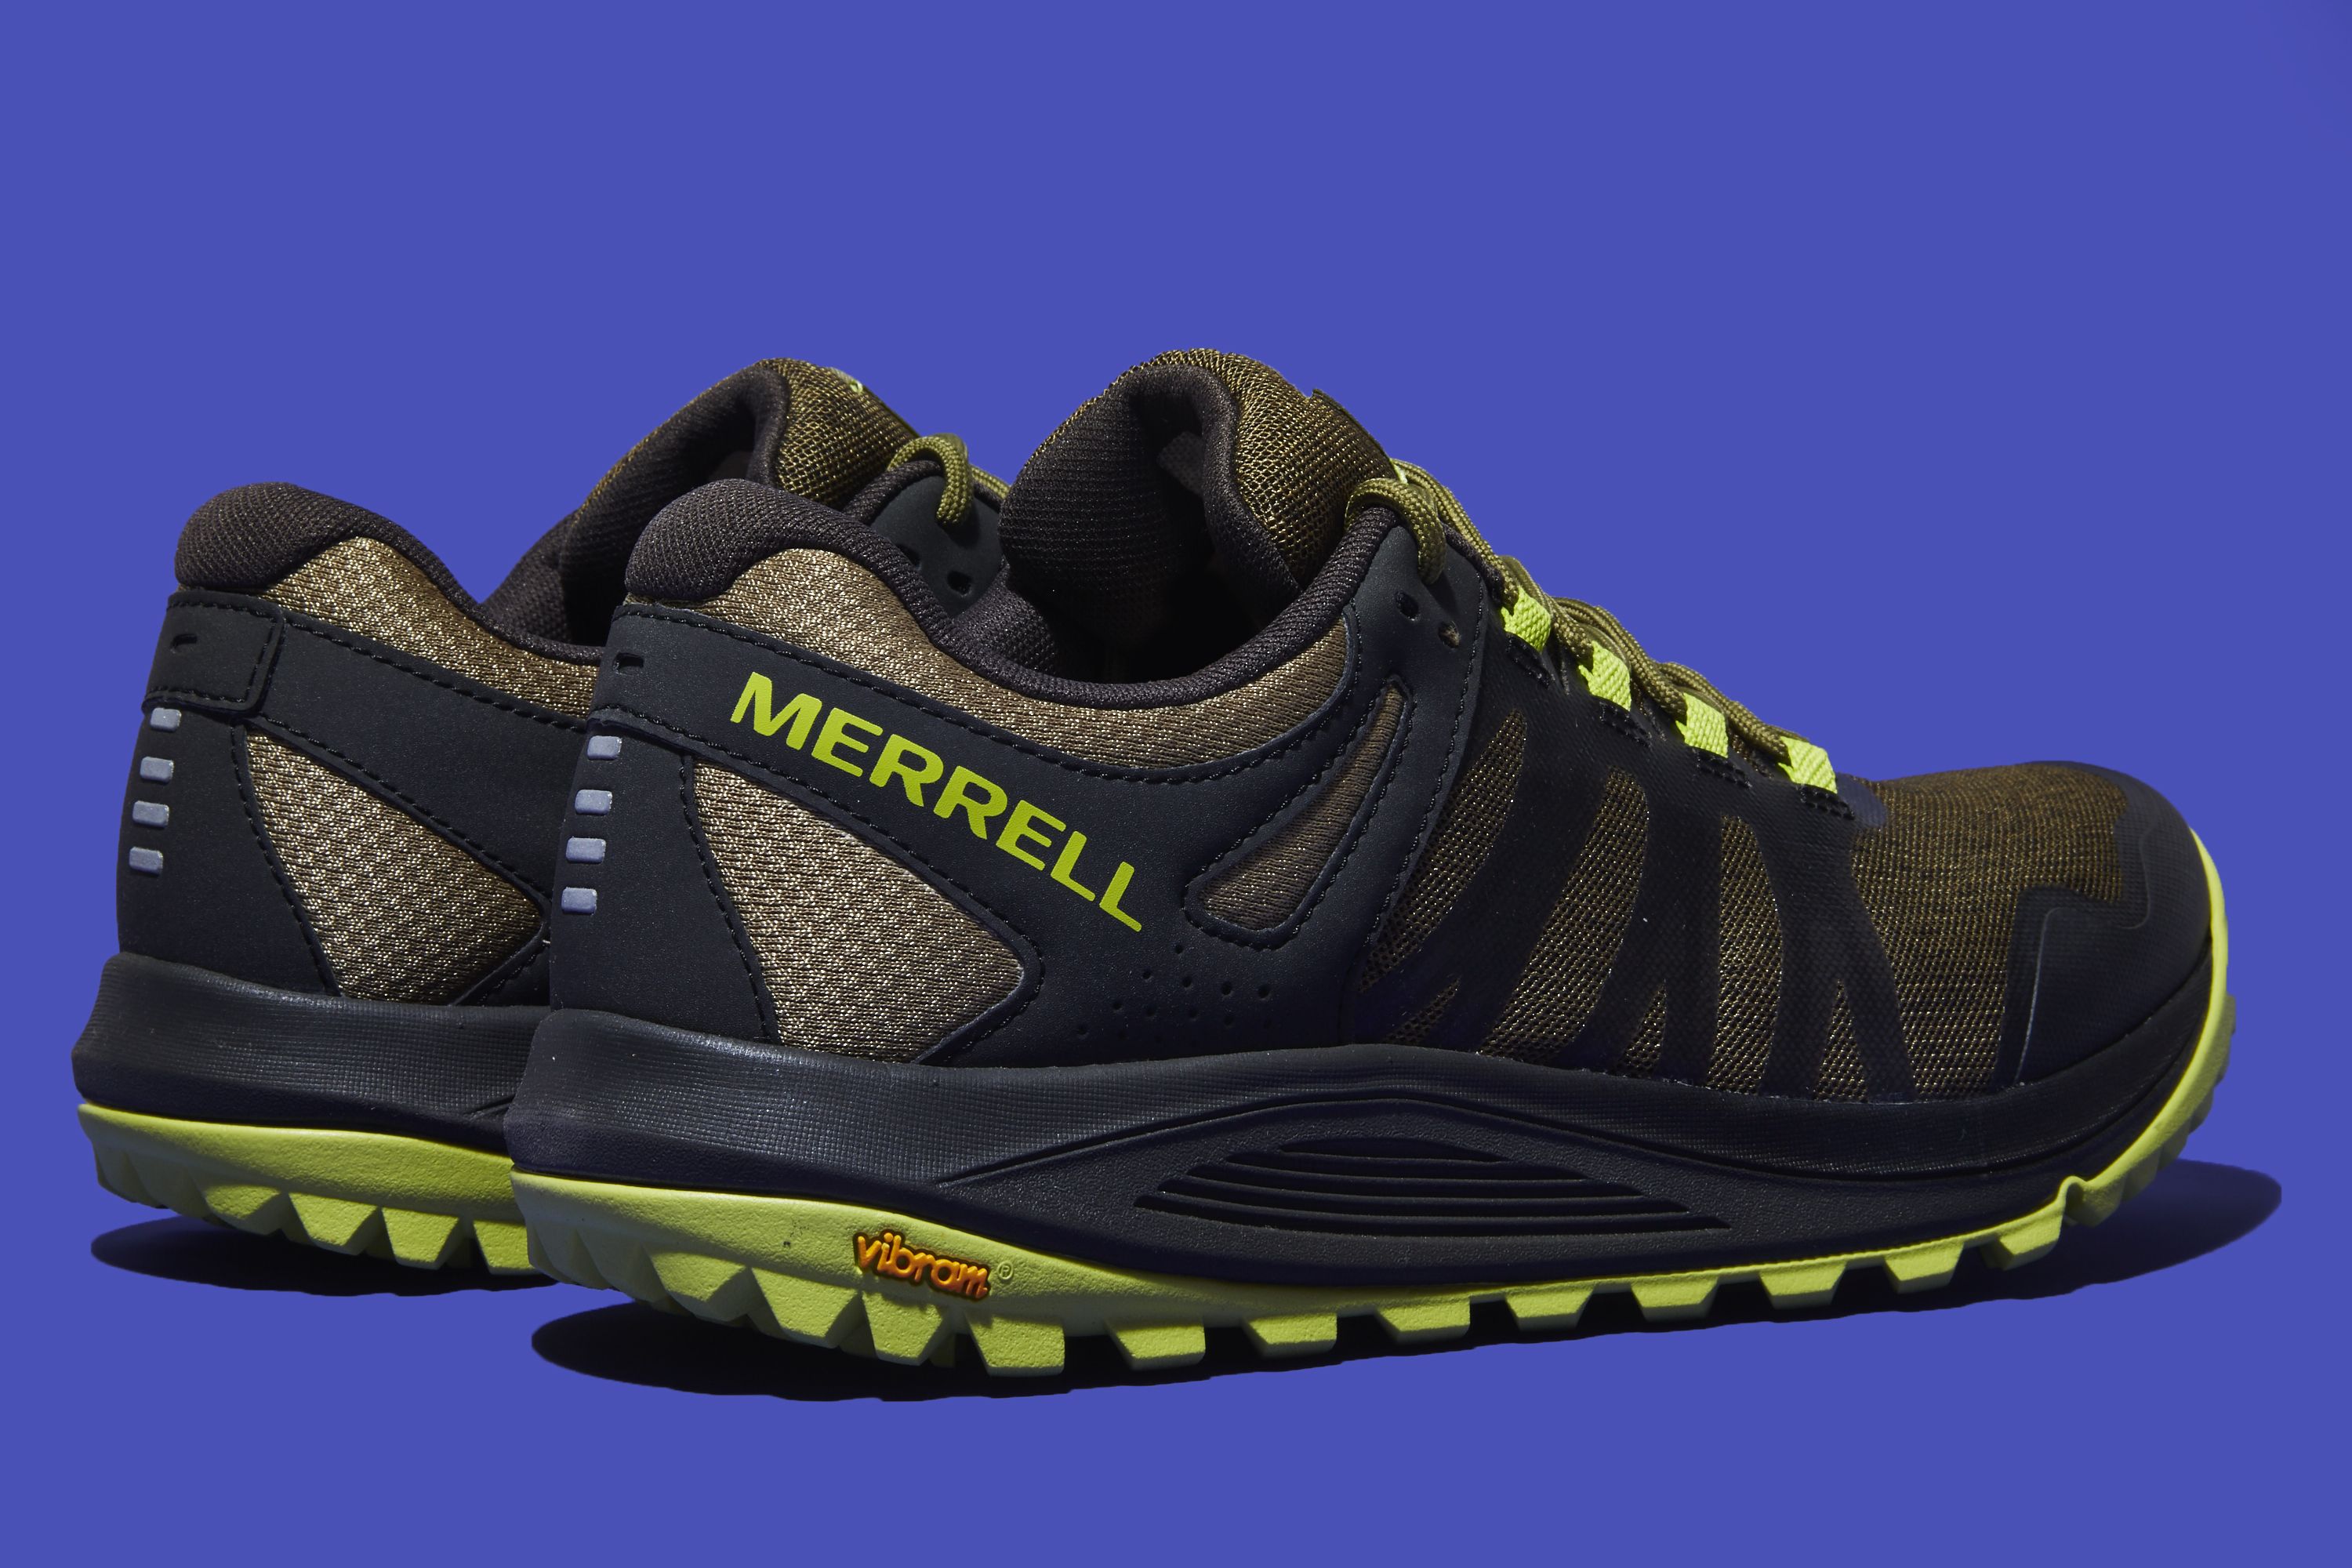 Merrell Nova Shoe Review 2019 Best Trail Running Shoes for Men